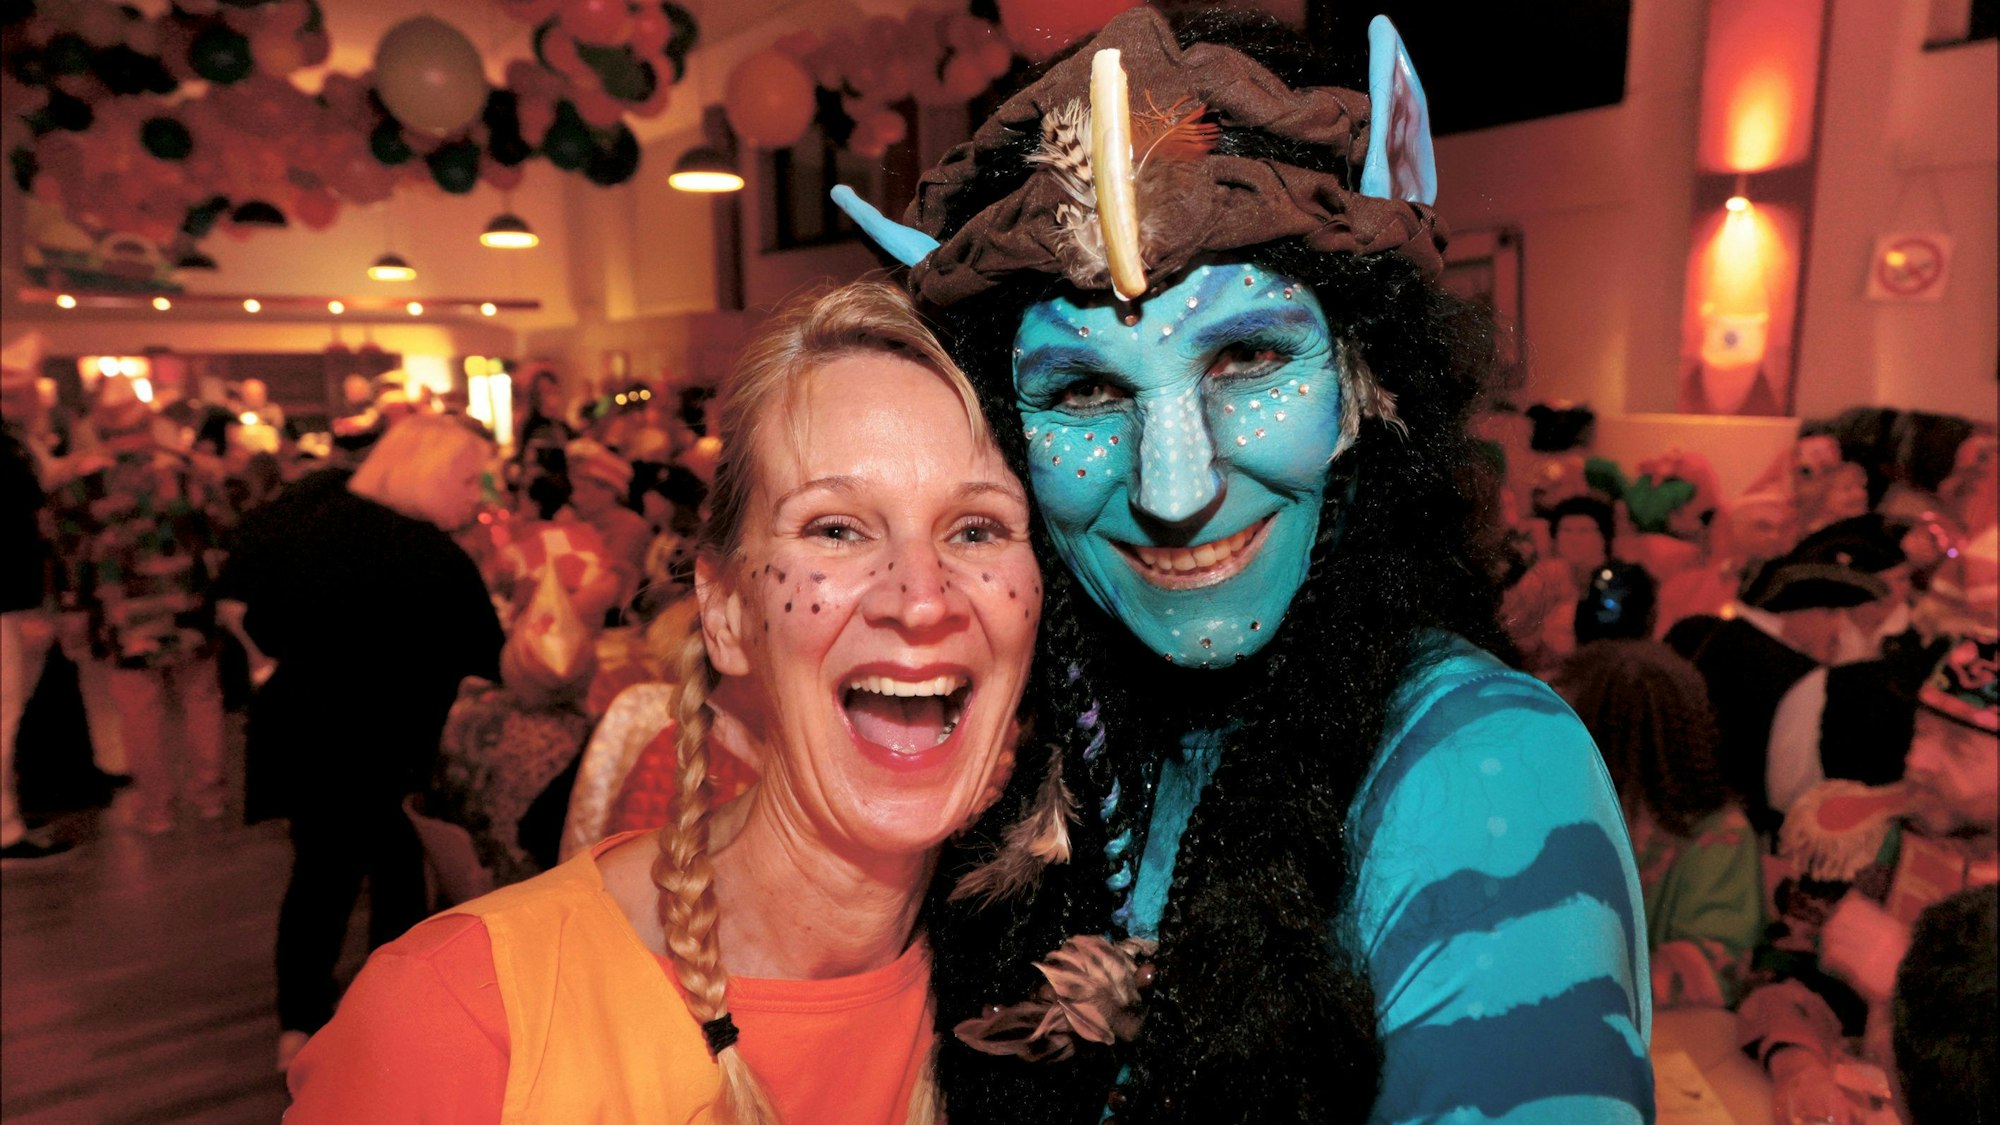 Besucher als Pippi Langstrumpf und Avatar verkleidet.